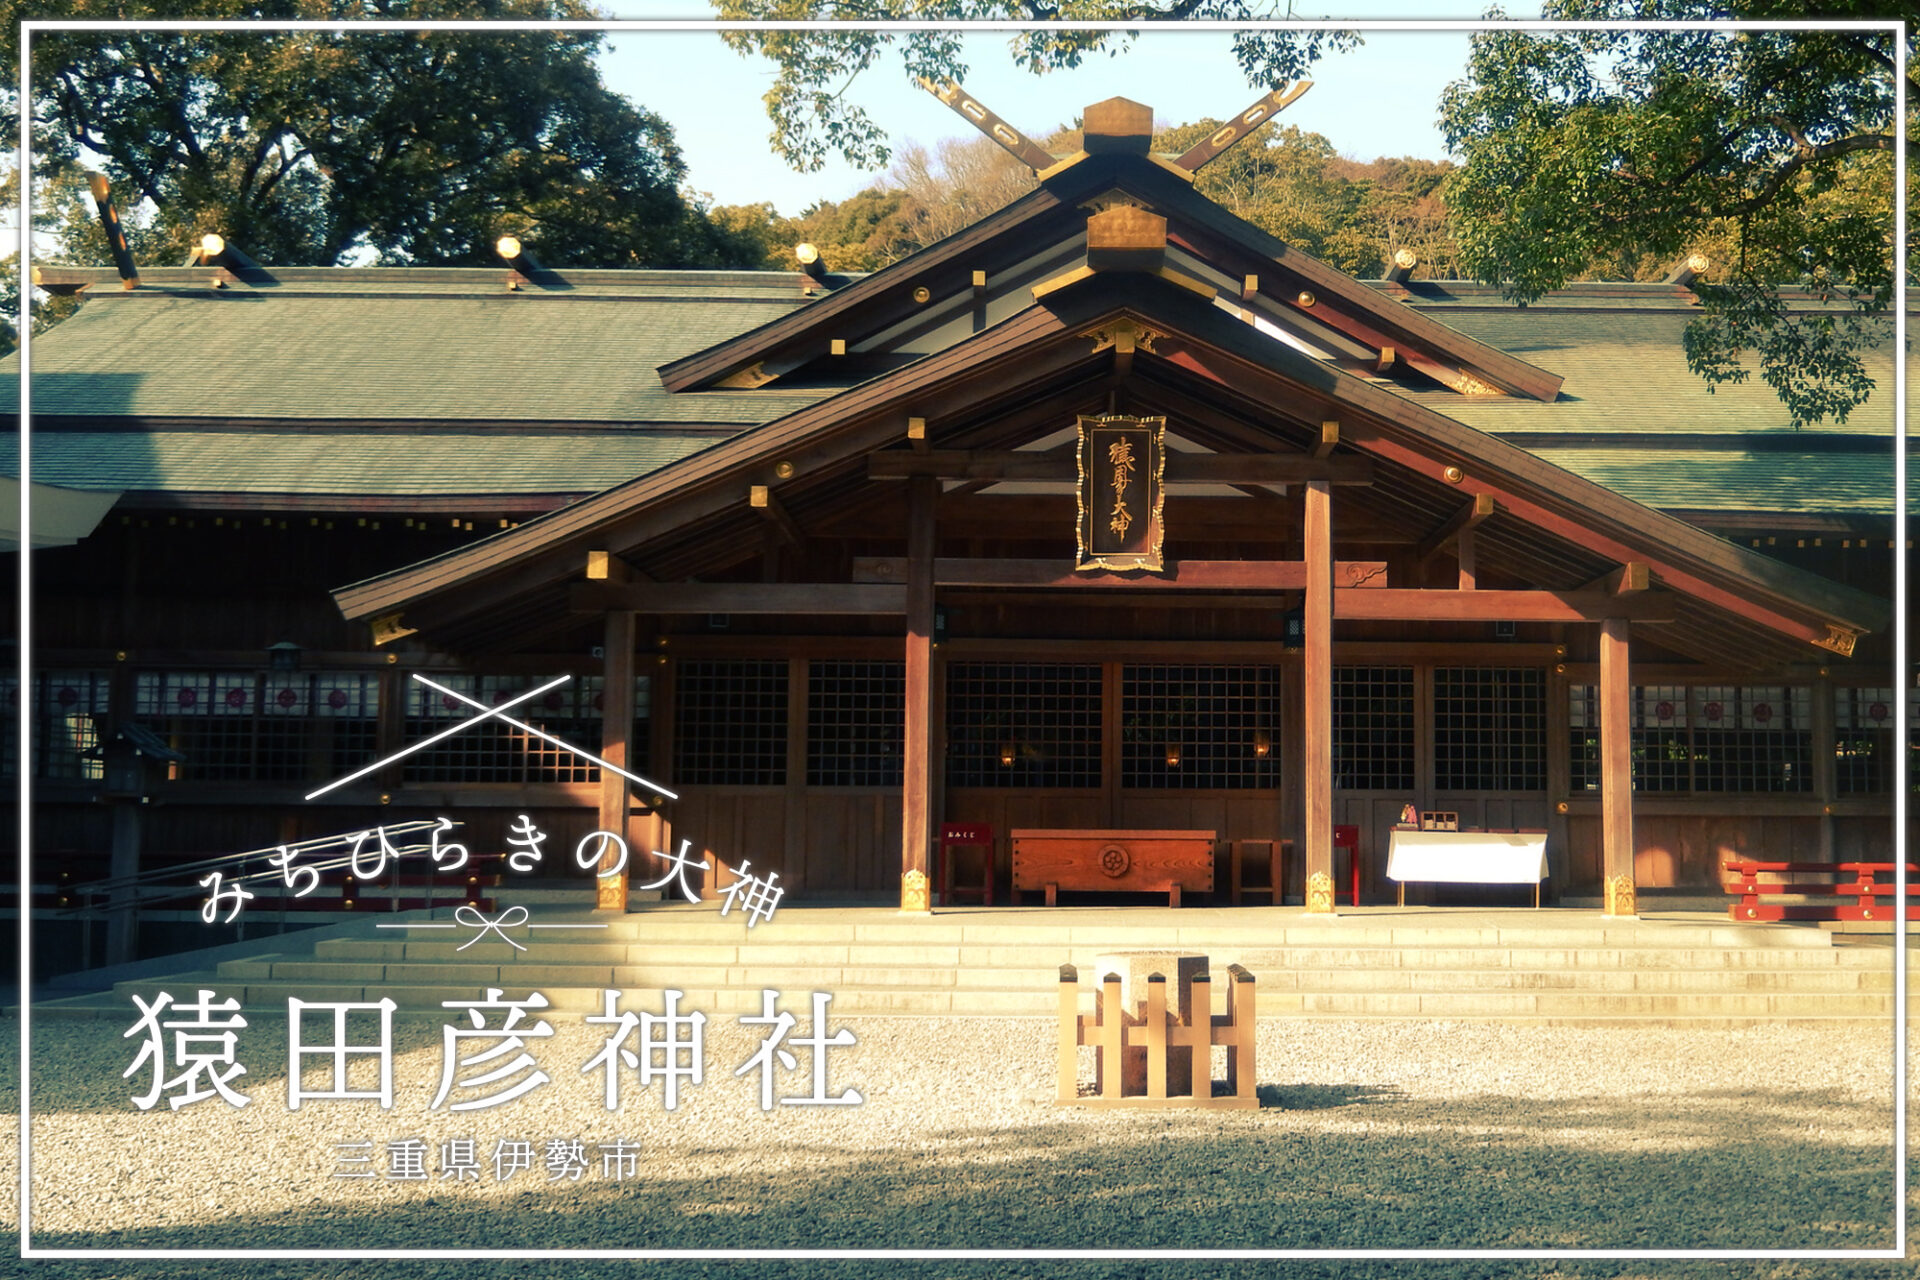 三重・猿田彦神社で「物事をよい方向へみちびく神様」へ参拝してきました